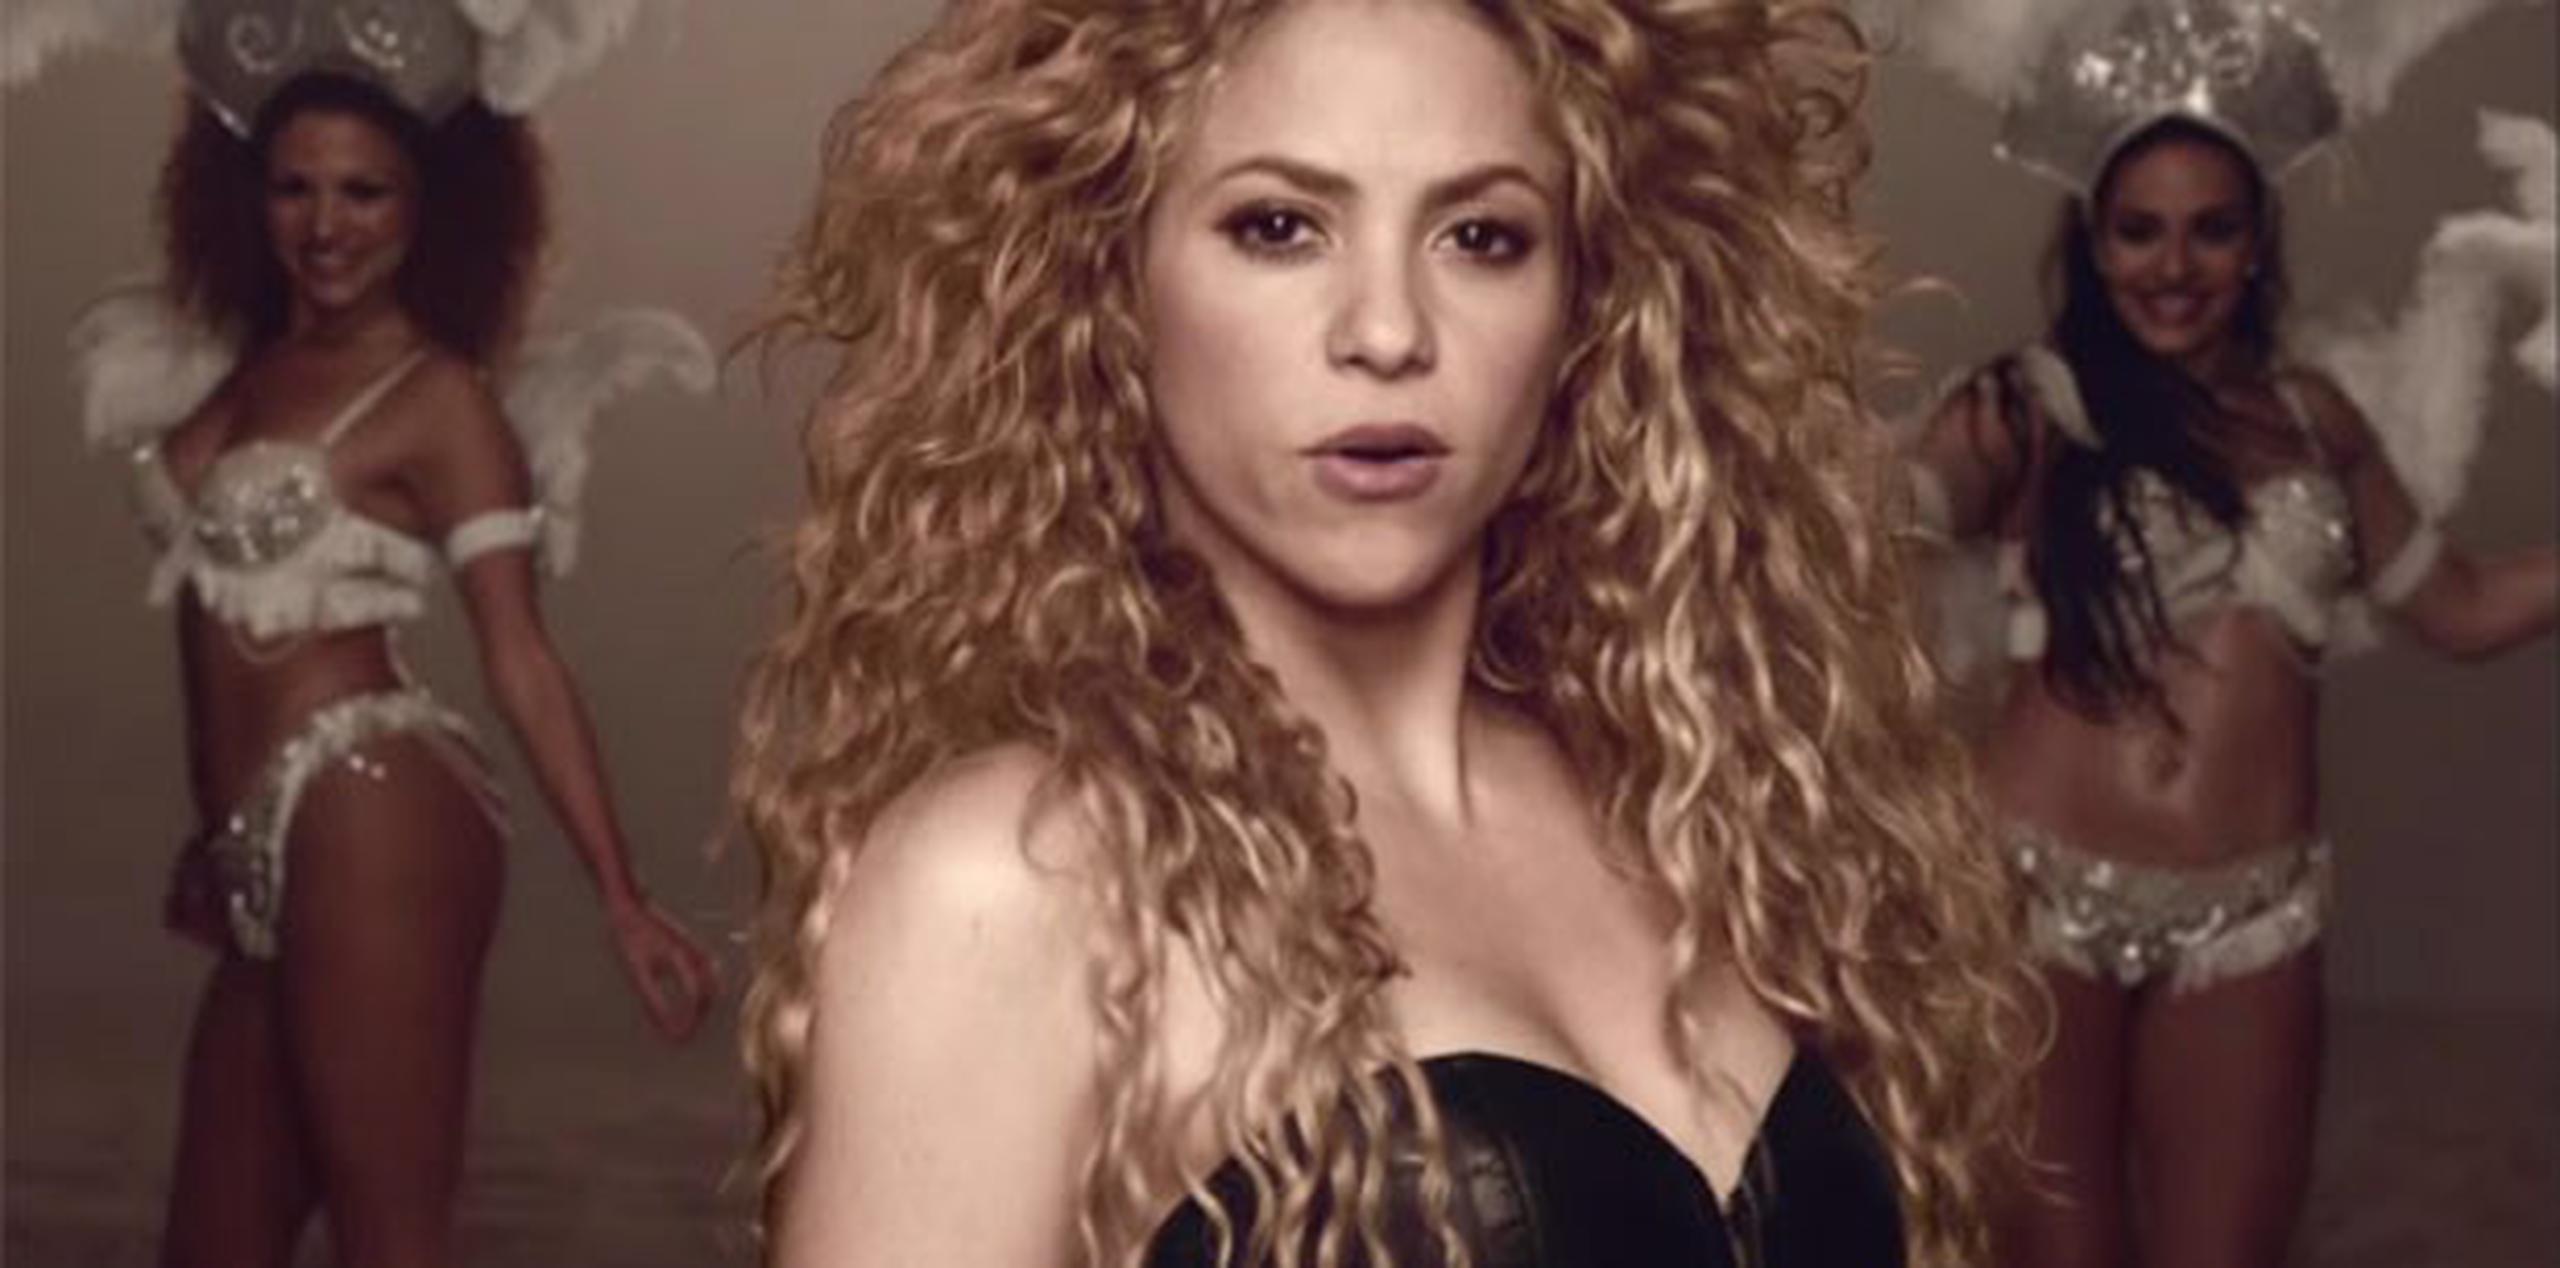 En la interpretación de "La la la" (Brazil 2014) acompañará a Shakira el brasileño Carlinhos Brown. (Archivo)